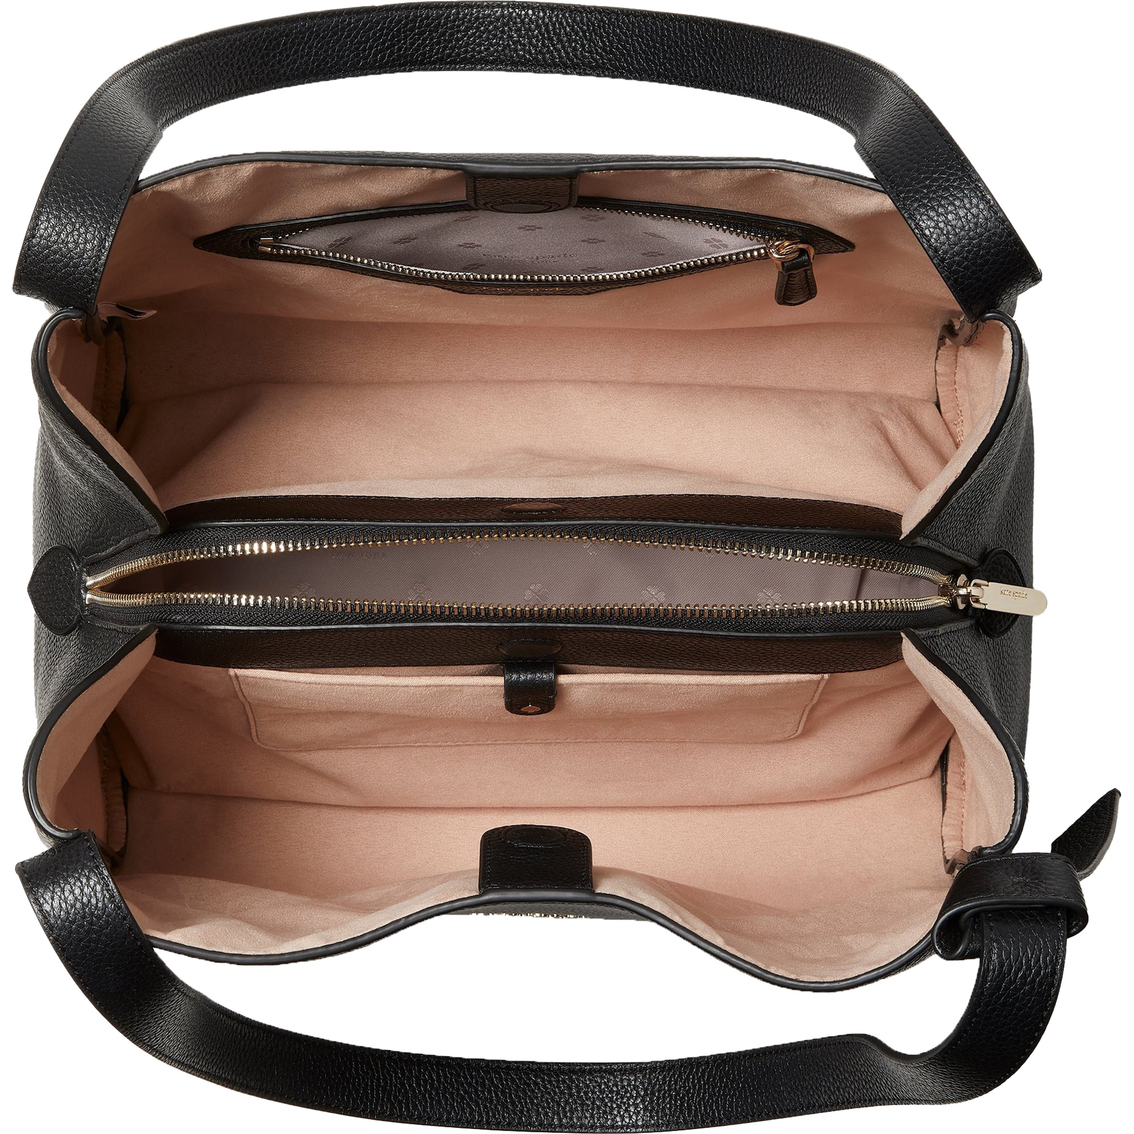 Kate Spade New York Knott Pebbled Leather Large Shoulder Bag - Image 2 of 2